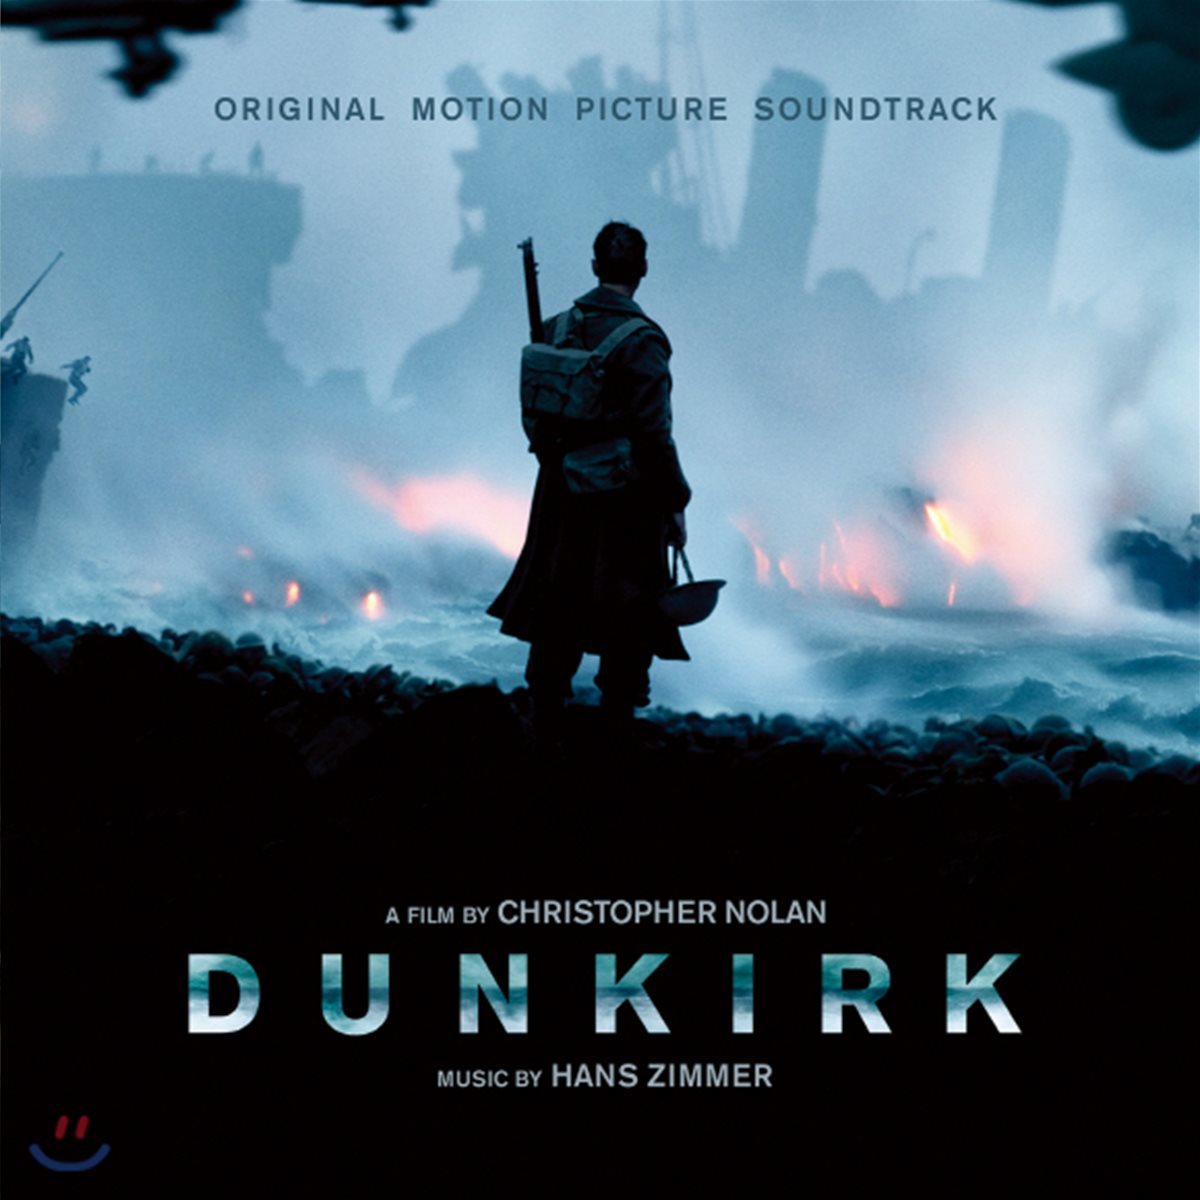 덩케르크 영화음악 (Dunkirk OST by Hans Zimmer 한스 짐머)